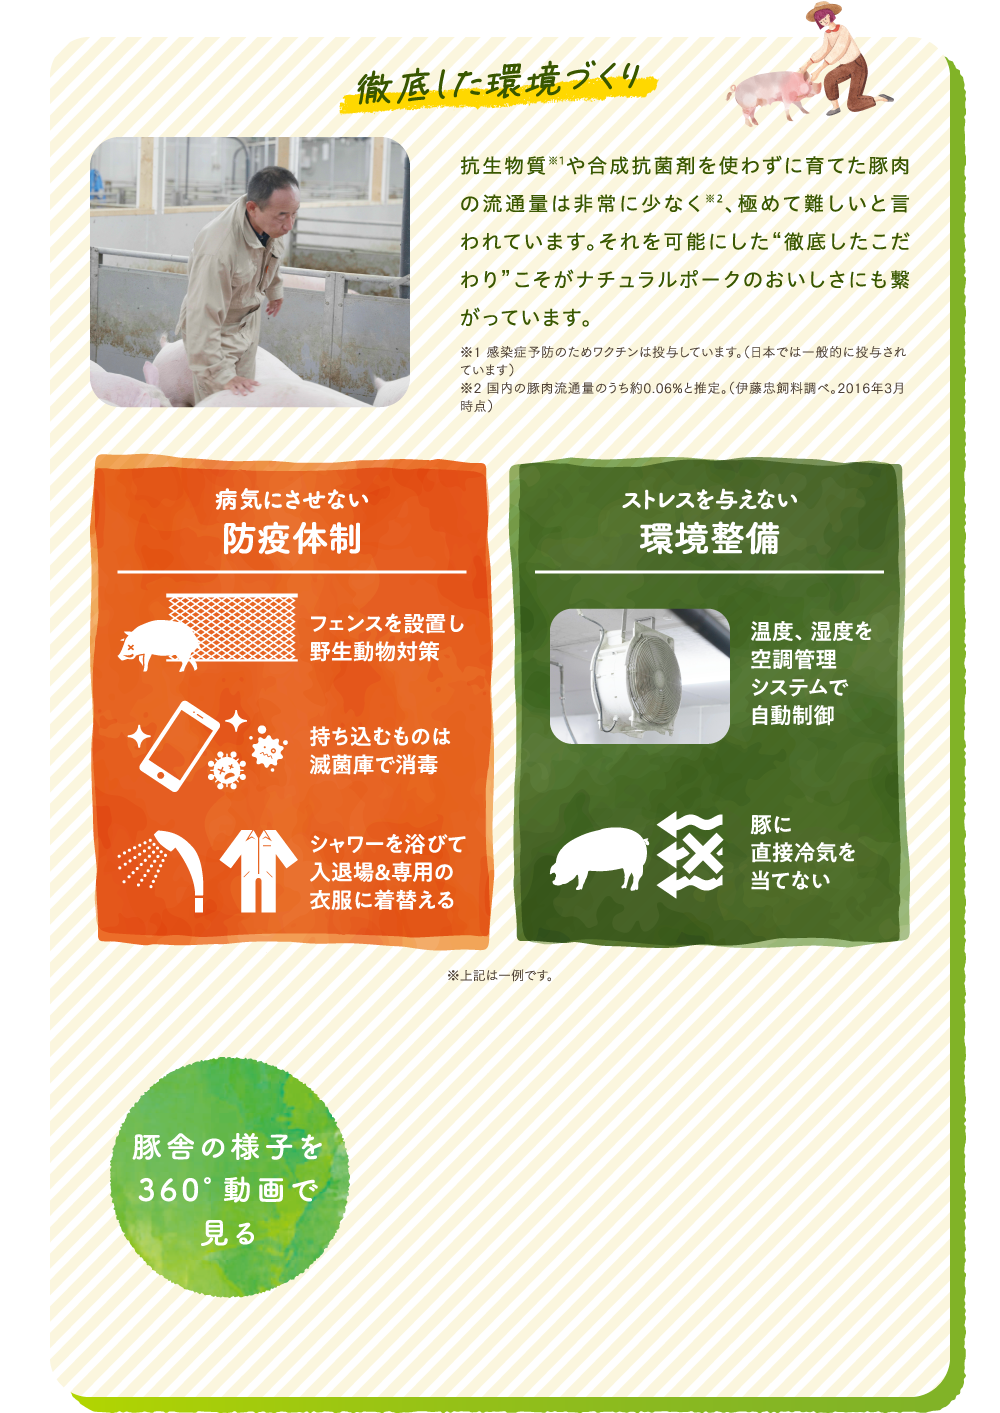 徹底した環境づくり抗生物質※1や合成抗菌剤を使わずに育てた豚肉の流通量は非常に少なく※2、極めて難しいと言われています。それを可能にした“徹底したこだわり”こそがナチュラルポークのおいしさにも繋がっています。※1 感染症予防のためワクチンは投与しています。（日本では一般的に投与されています）※2 国内の豚肉流通量のうち約0.06%と推定。（伊藤忠飼料調べ。2016年3月時点）病気にさせない防疫体制フェンスを設置し野生動物対策持ち込むものは滅菌庫で消毒シャワーを浴びて入退場&専用の衣服に着替えるストレスを与えない環境整備温度、湿度を空調管理システムで自動制御豚に直接冷気を当てない※上記は一例です。豚舎の様子を360°動画で見る